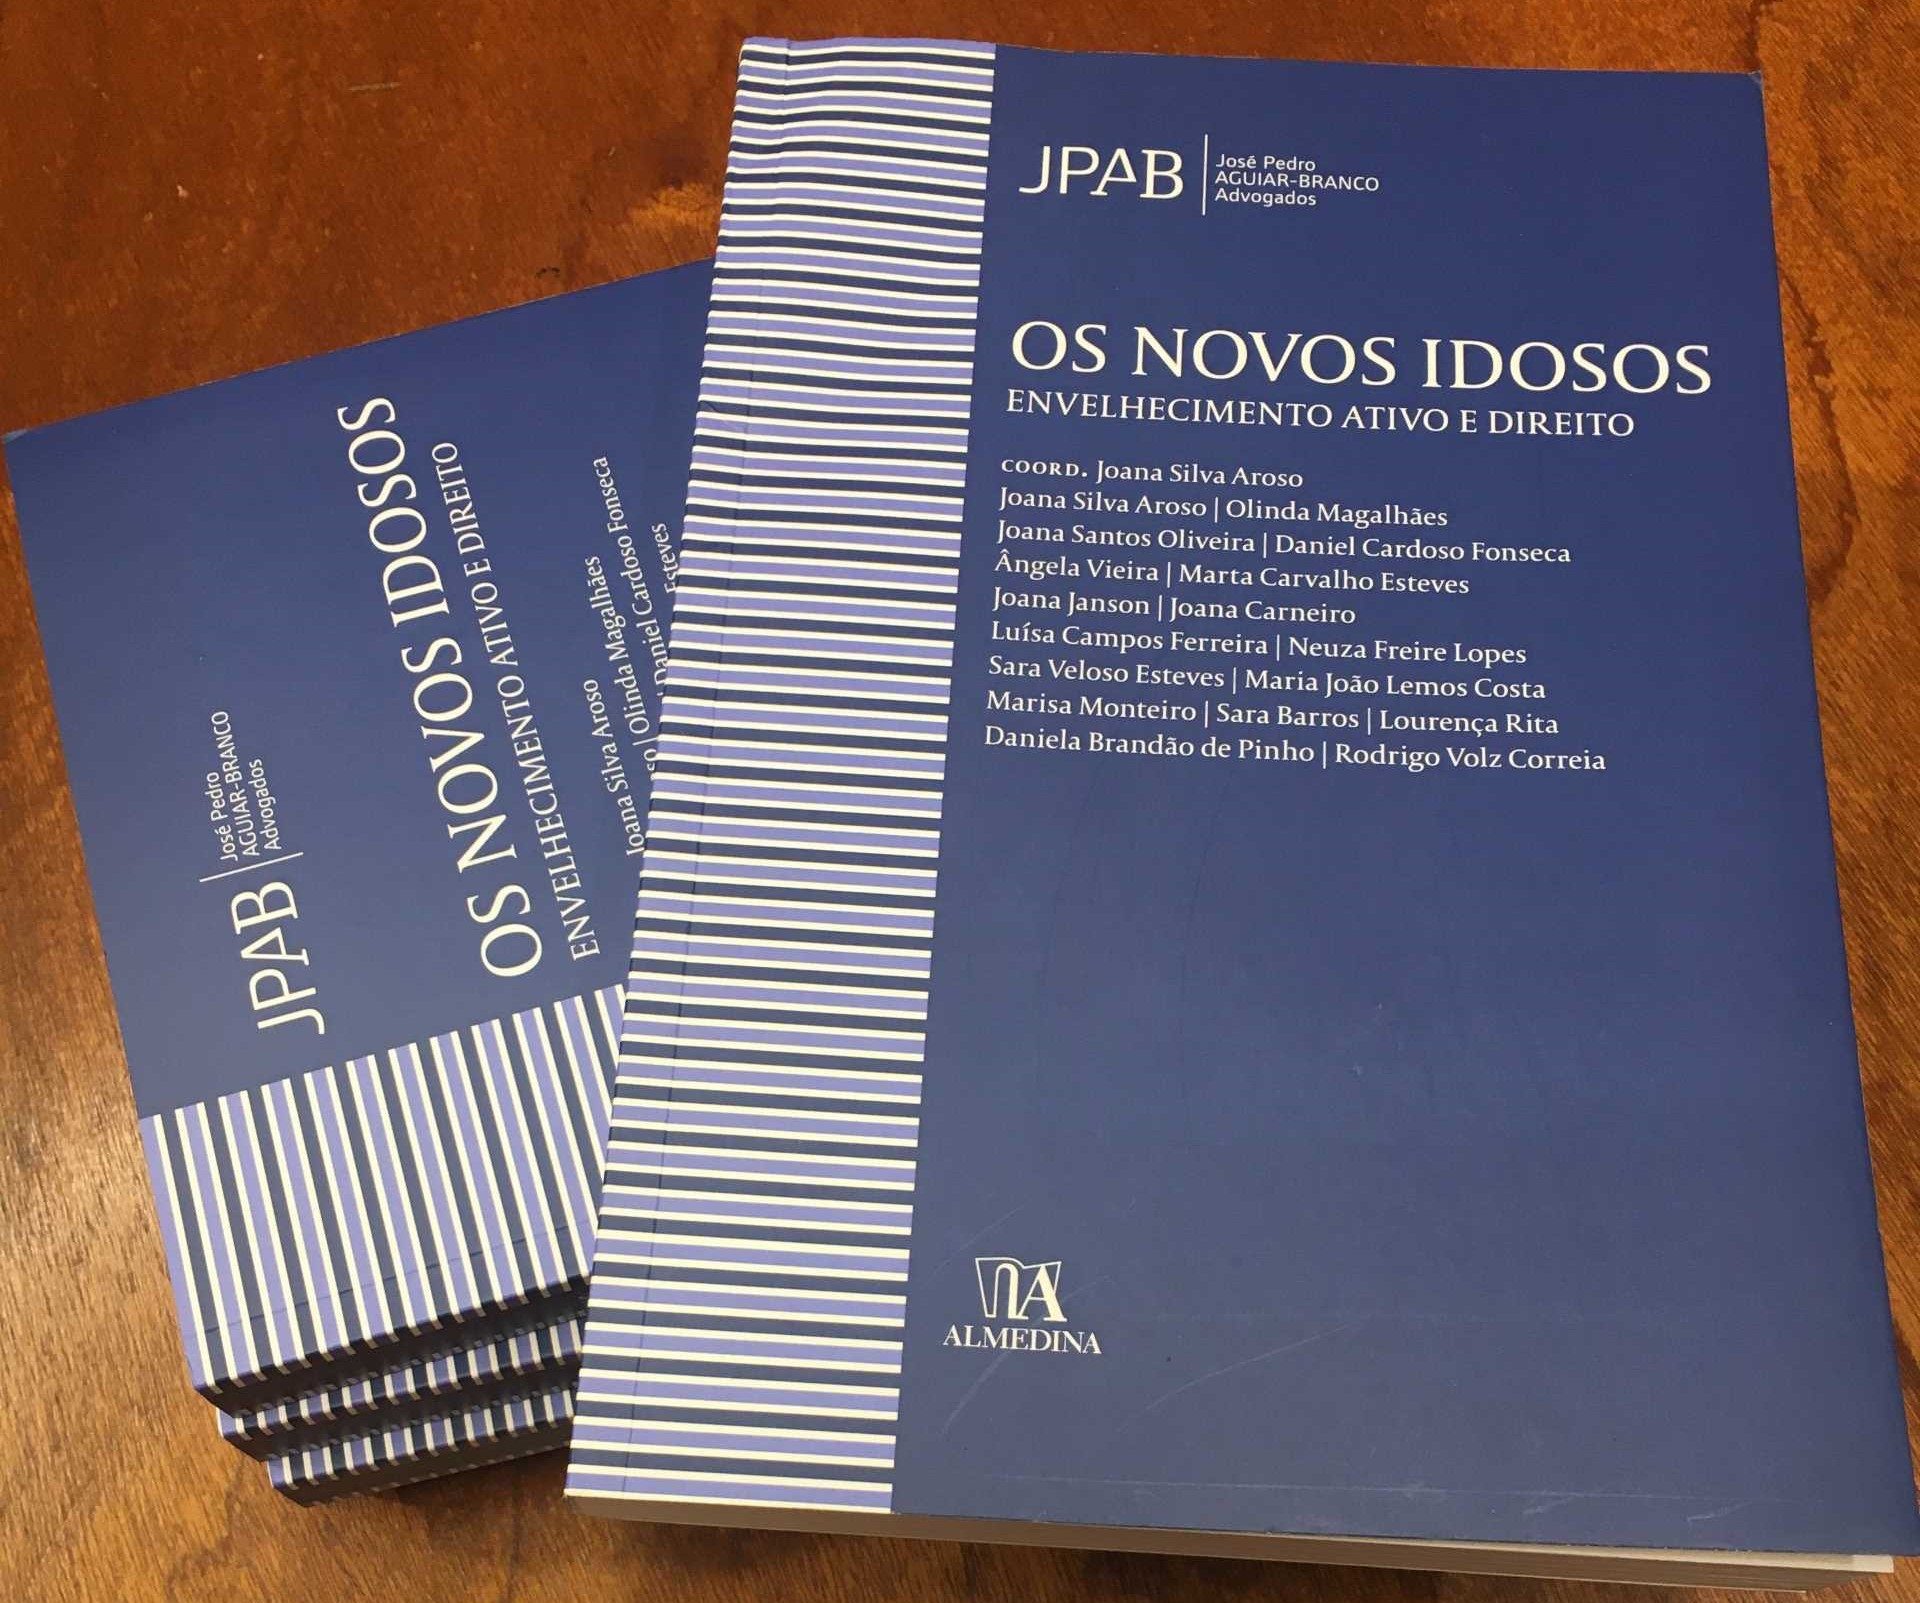 Livro "Os Novos Idosos" lançado pela JPAB sociedade de advogados. Fonte: JPAB